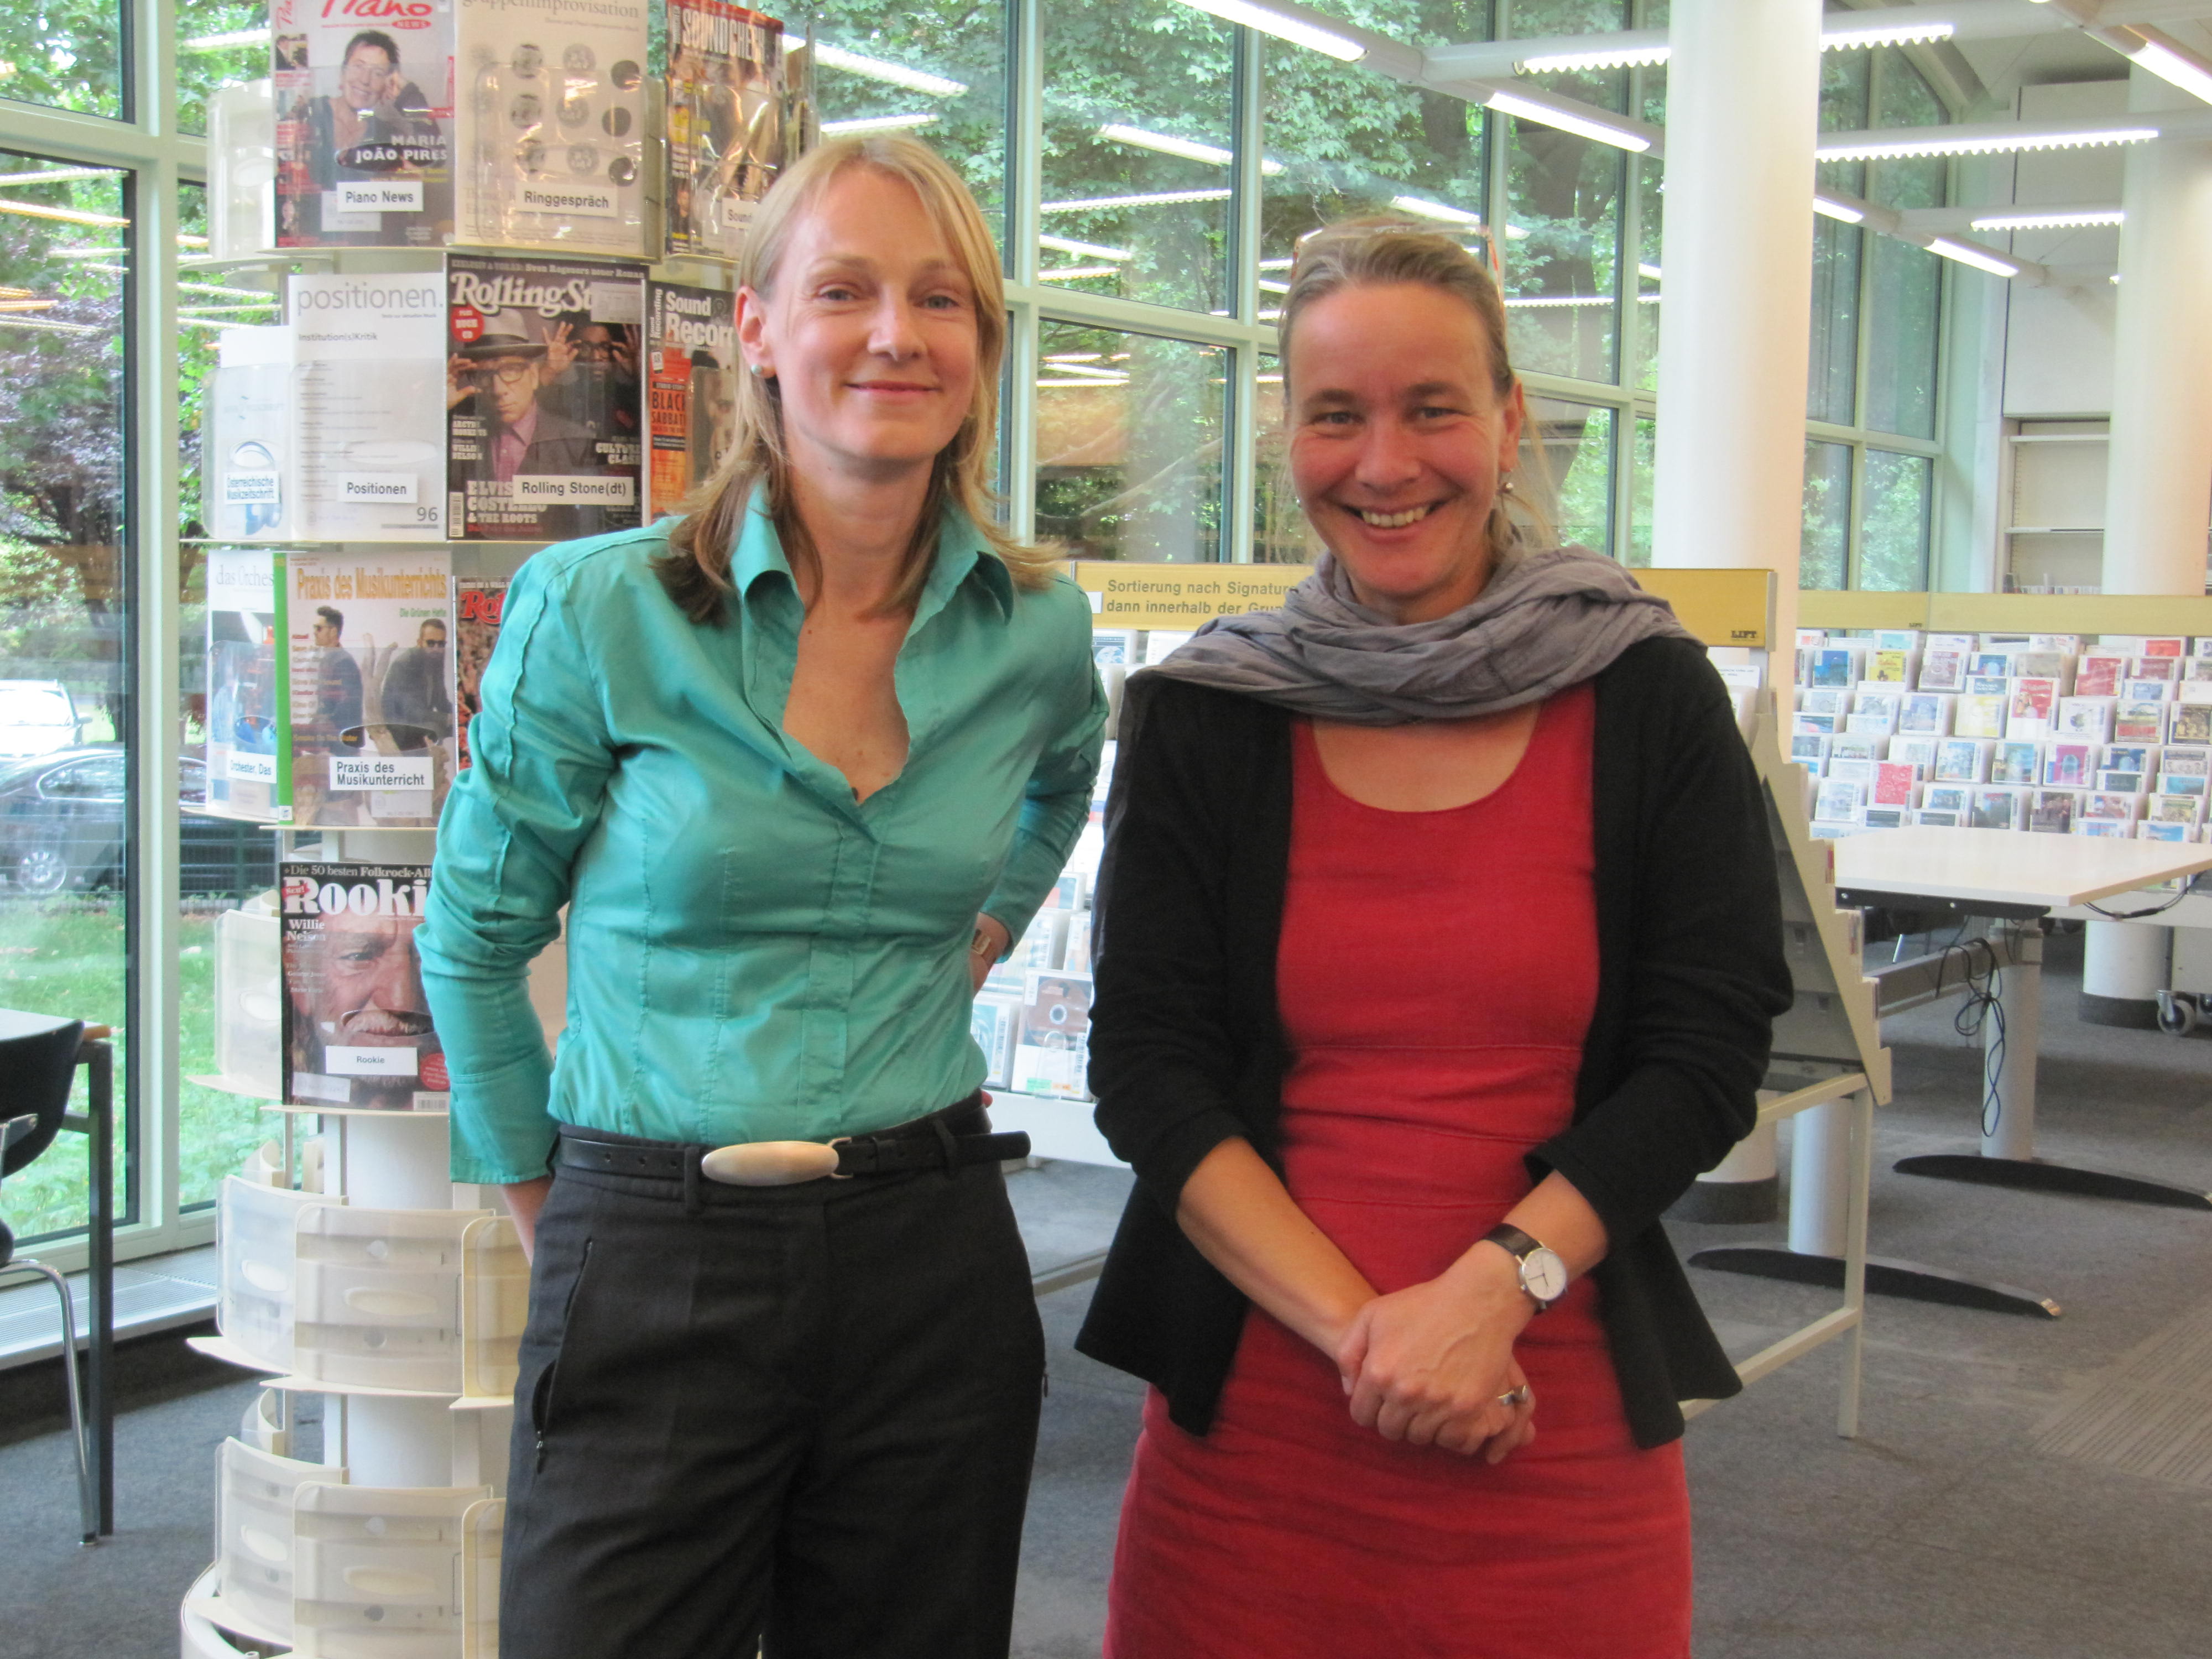 Susanne Hein (left) and Christiane Dillge (right) from Zentral- und Landesbibliothek, Berlin